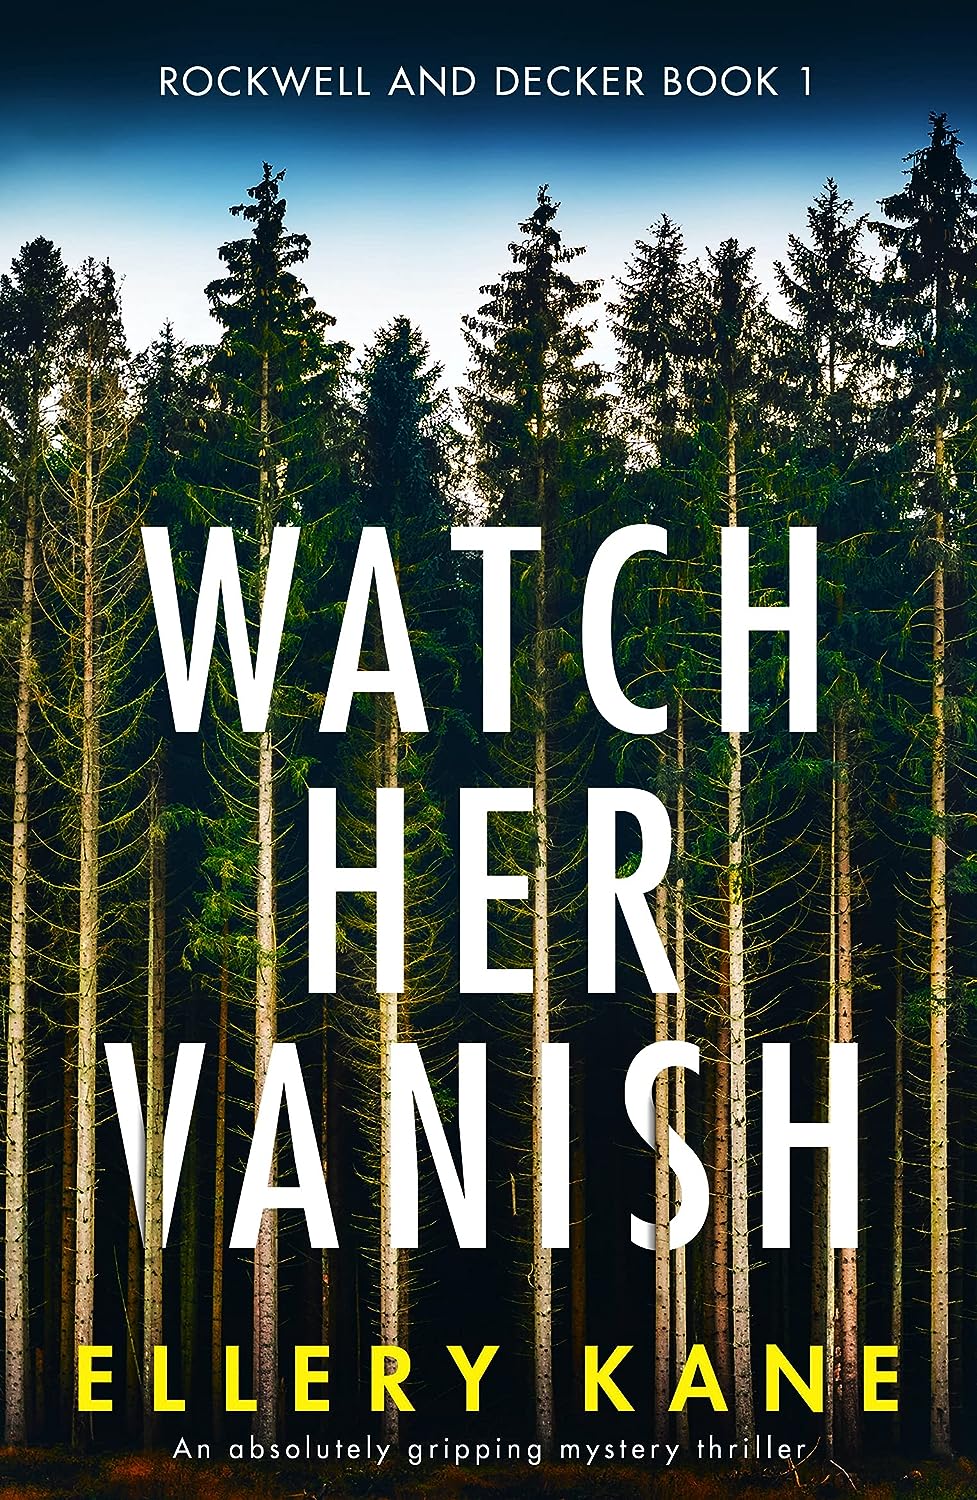 Watch Her Vanish